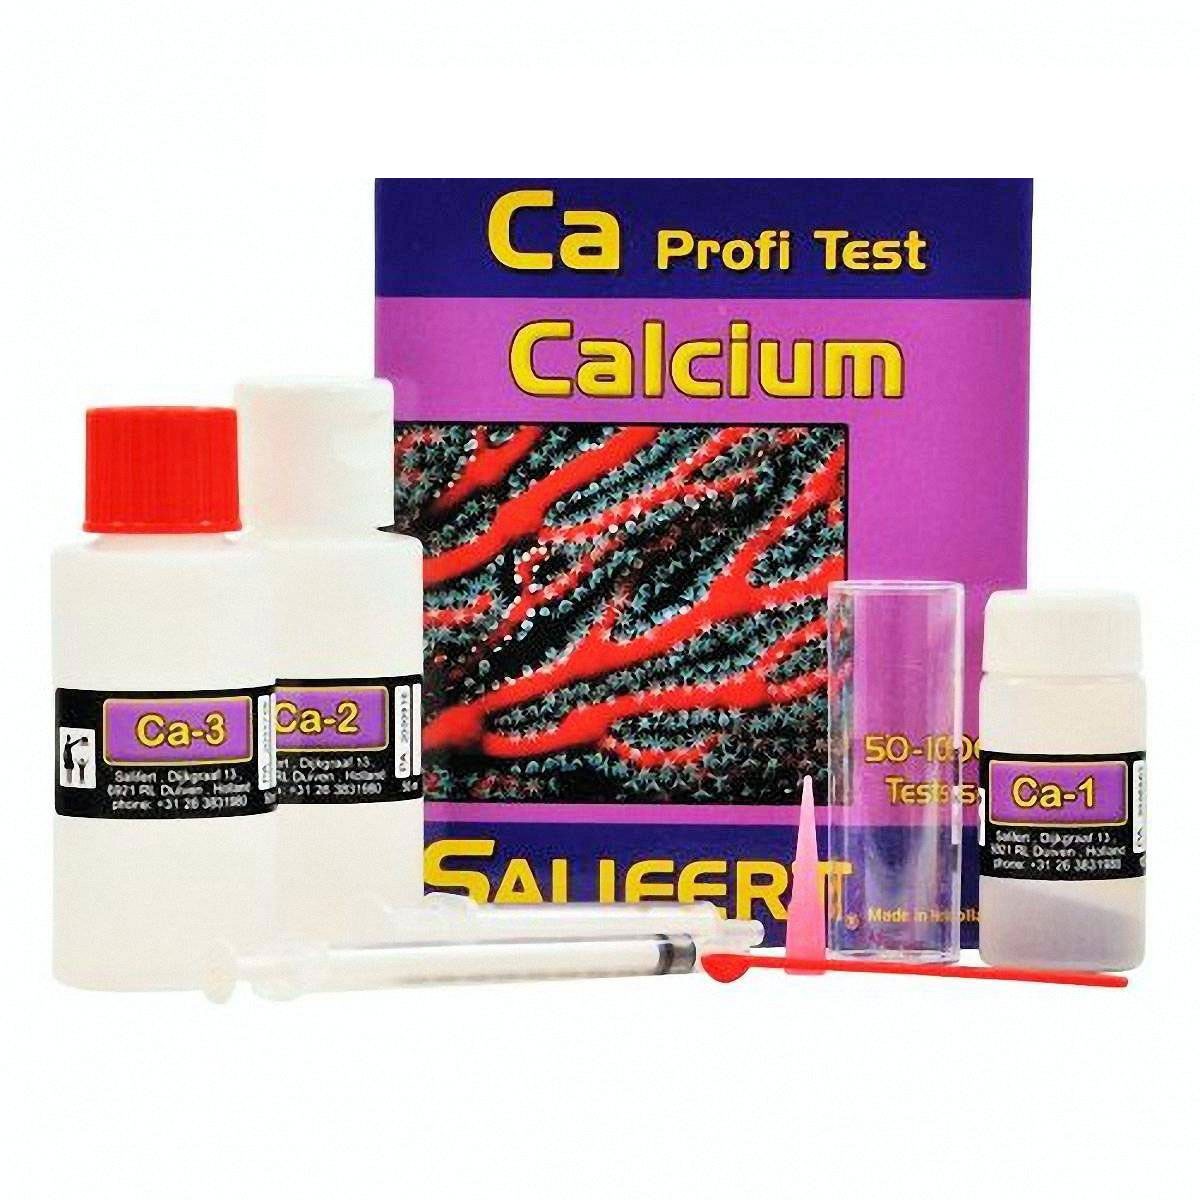 Profi test calcium